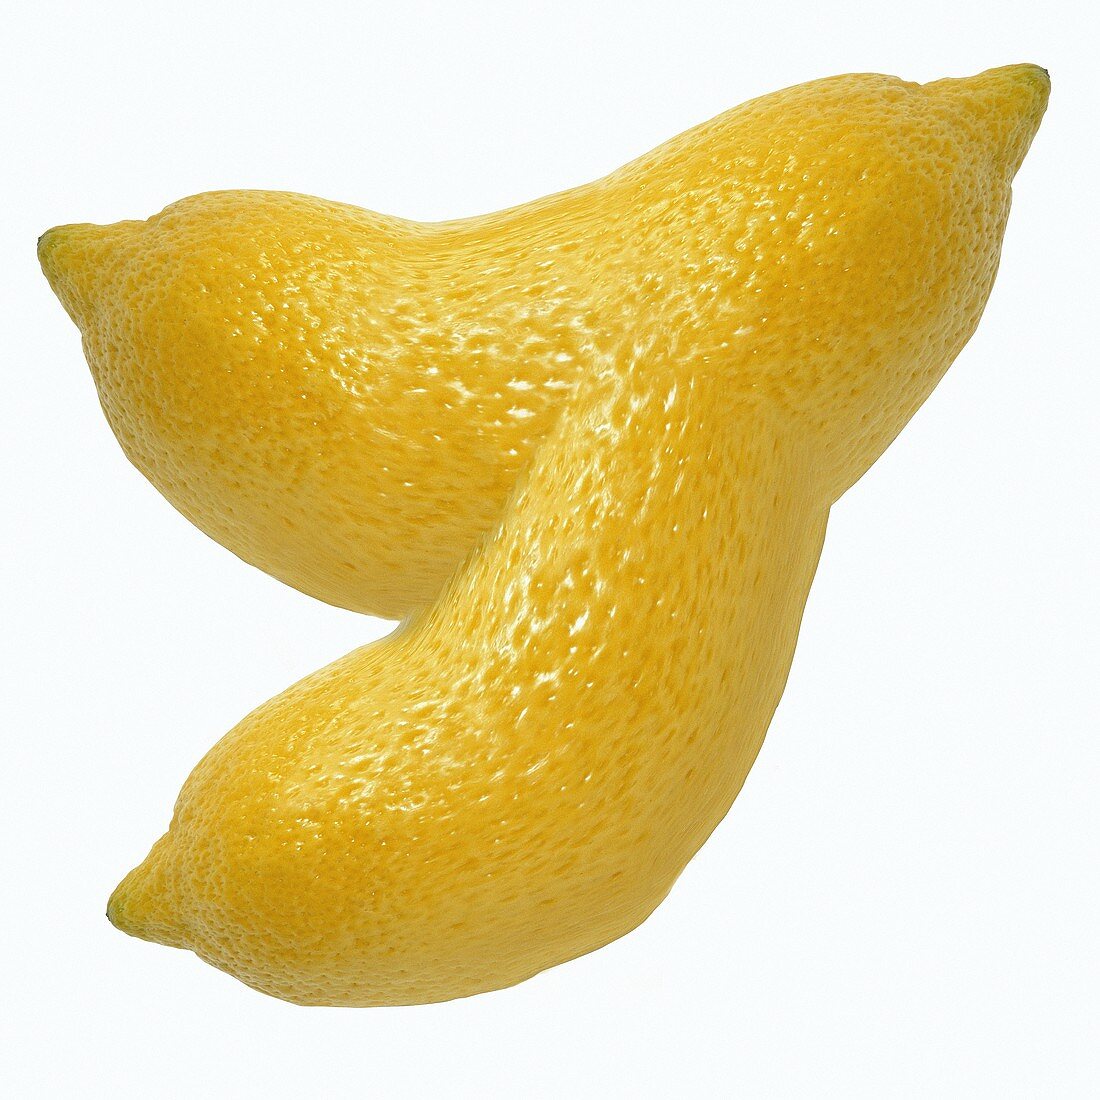 Zusammengewachsene Zitronen